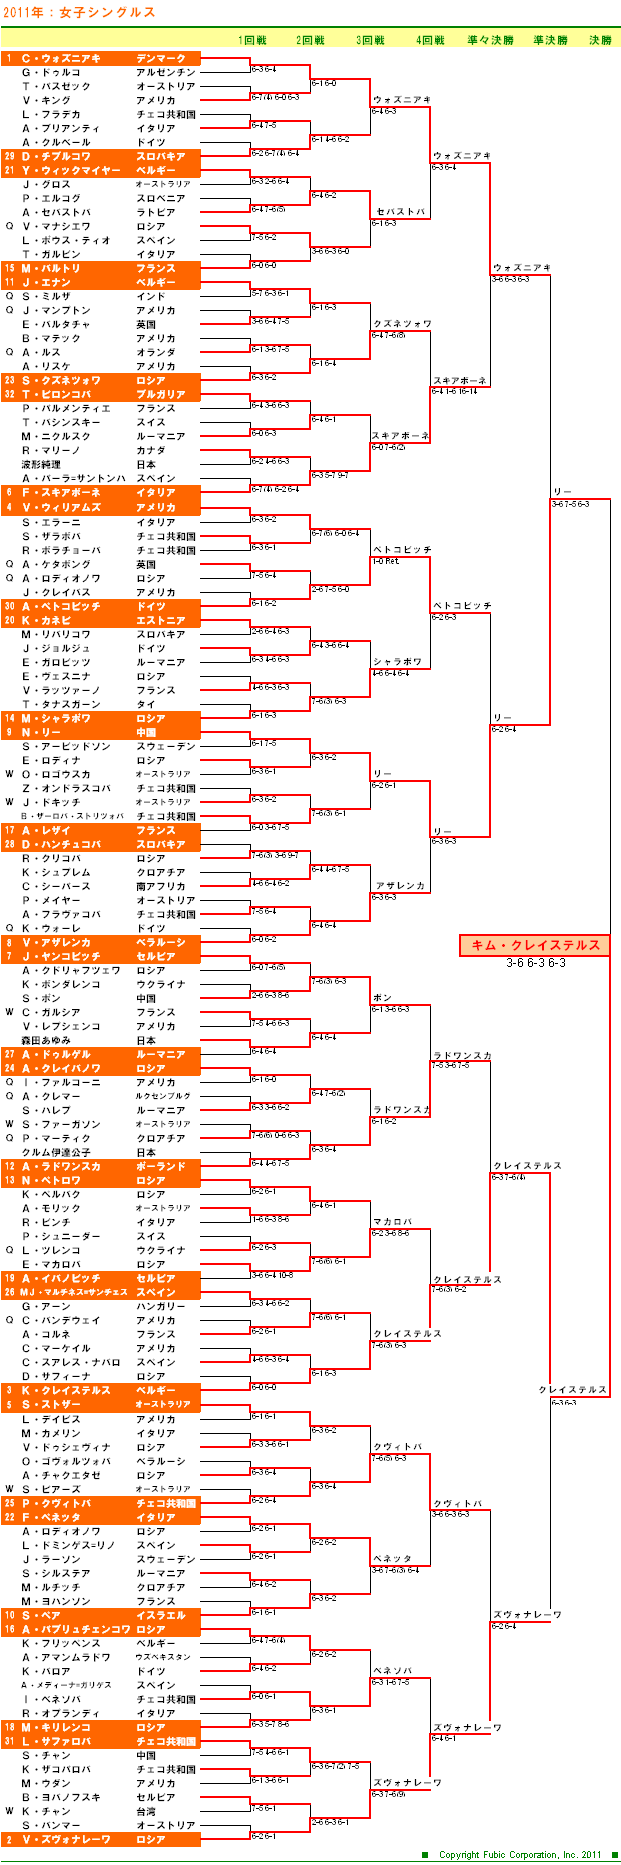 全豪オープンテニス2011　女子シングルスドロー表